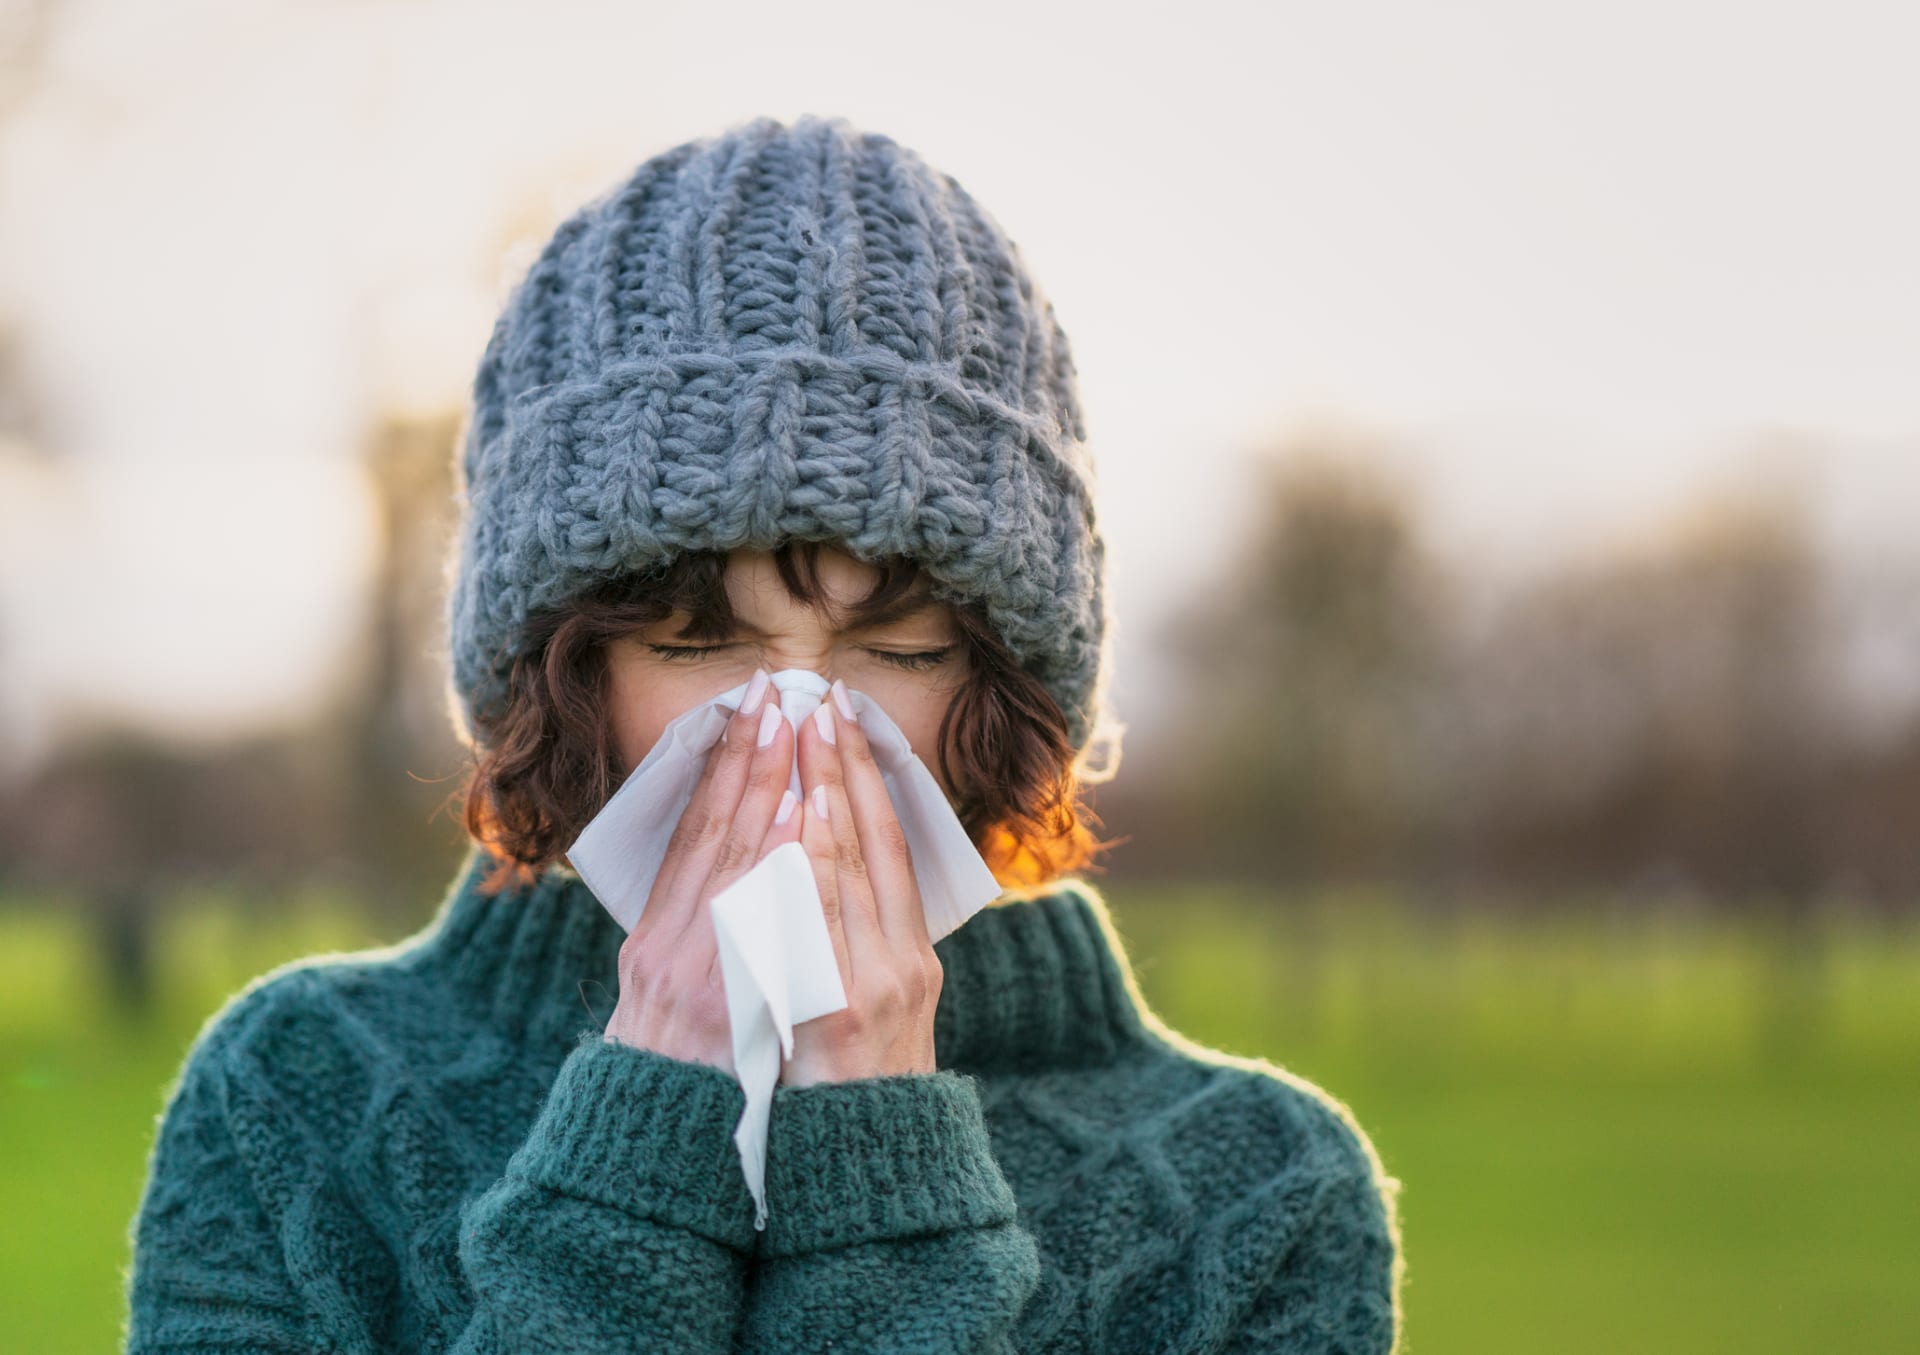 Vyvracíme mýty o zdraví: Rýmu nemáme z nachlazení a může být i nebezpečná